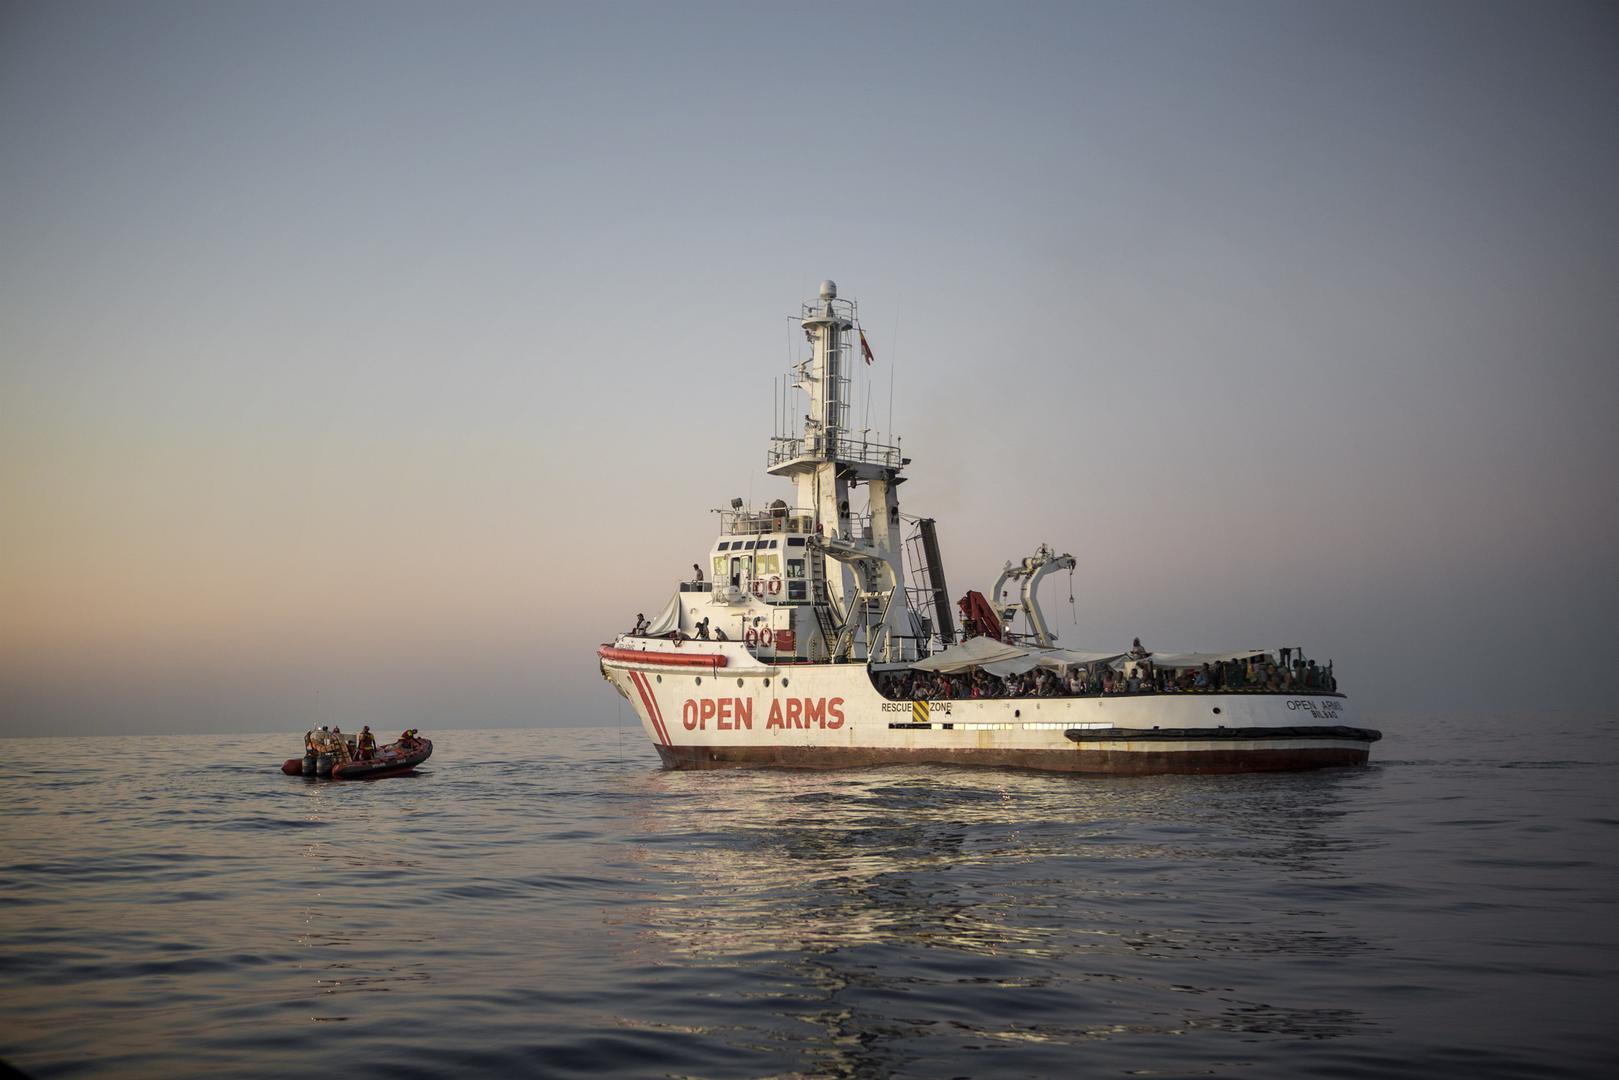 سفينة الإنقاذ "أوبن آرمز" التابعة لـ "برو أكتيفا" في مهمة في نوفمبر/تشرين الثاني 2017.